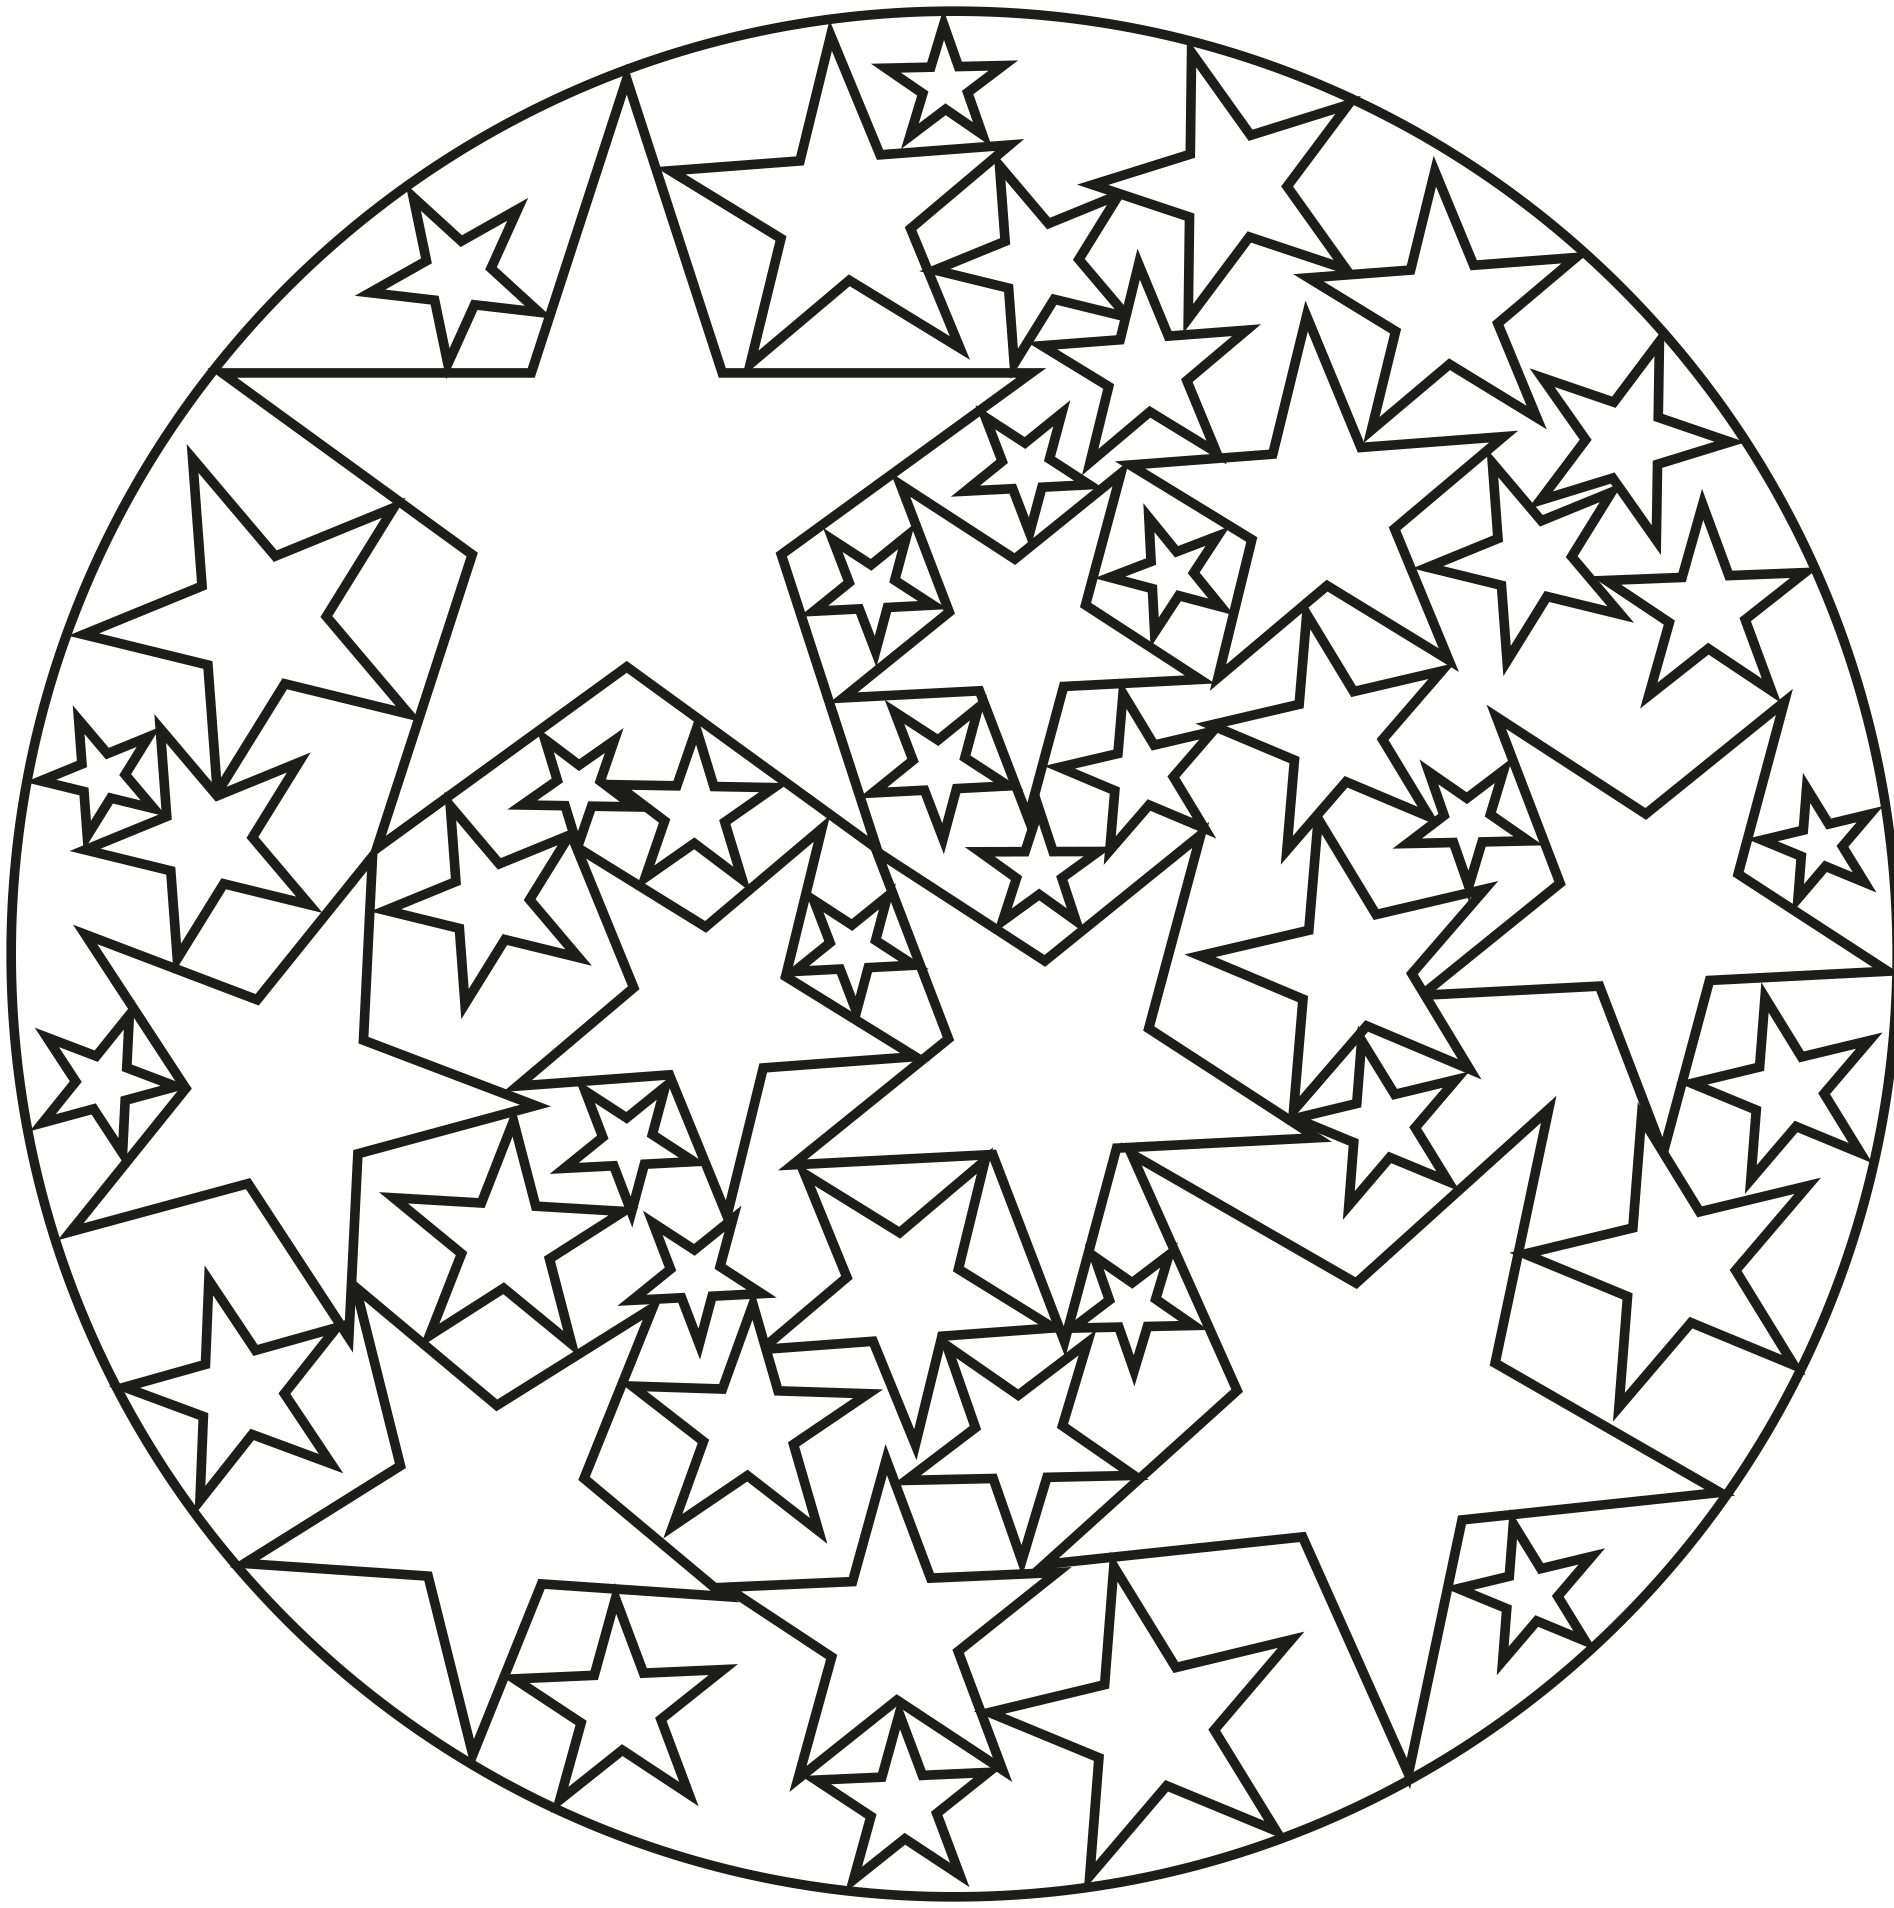 Peu de détails à colorier dans ce Mandala assez simple, composé d'étoiles de tailles diverses, qui conviendra aux enfants et aux adultes qui recherchent de la simplicité.